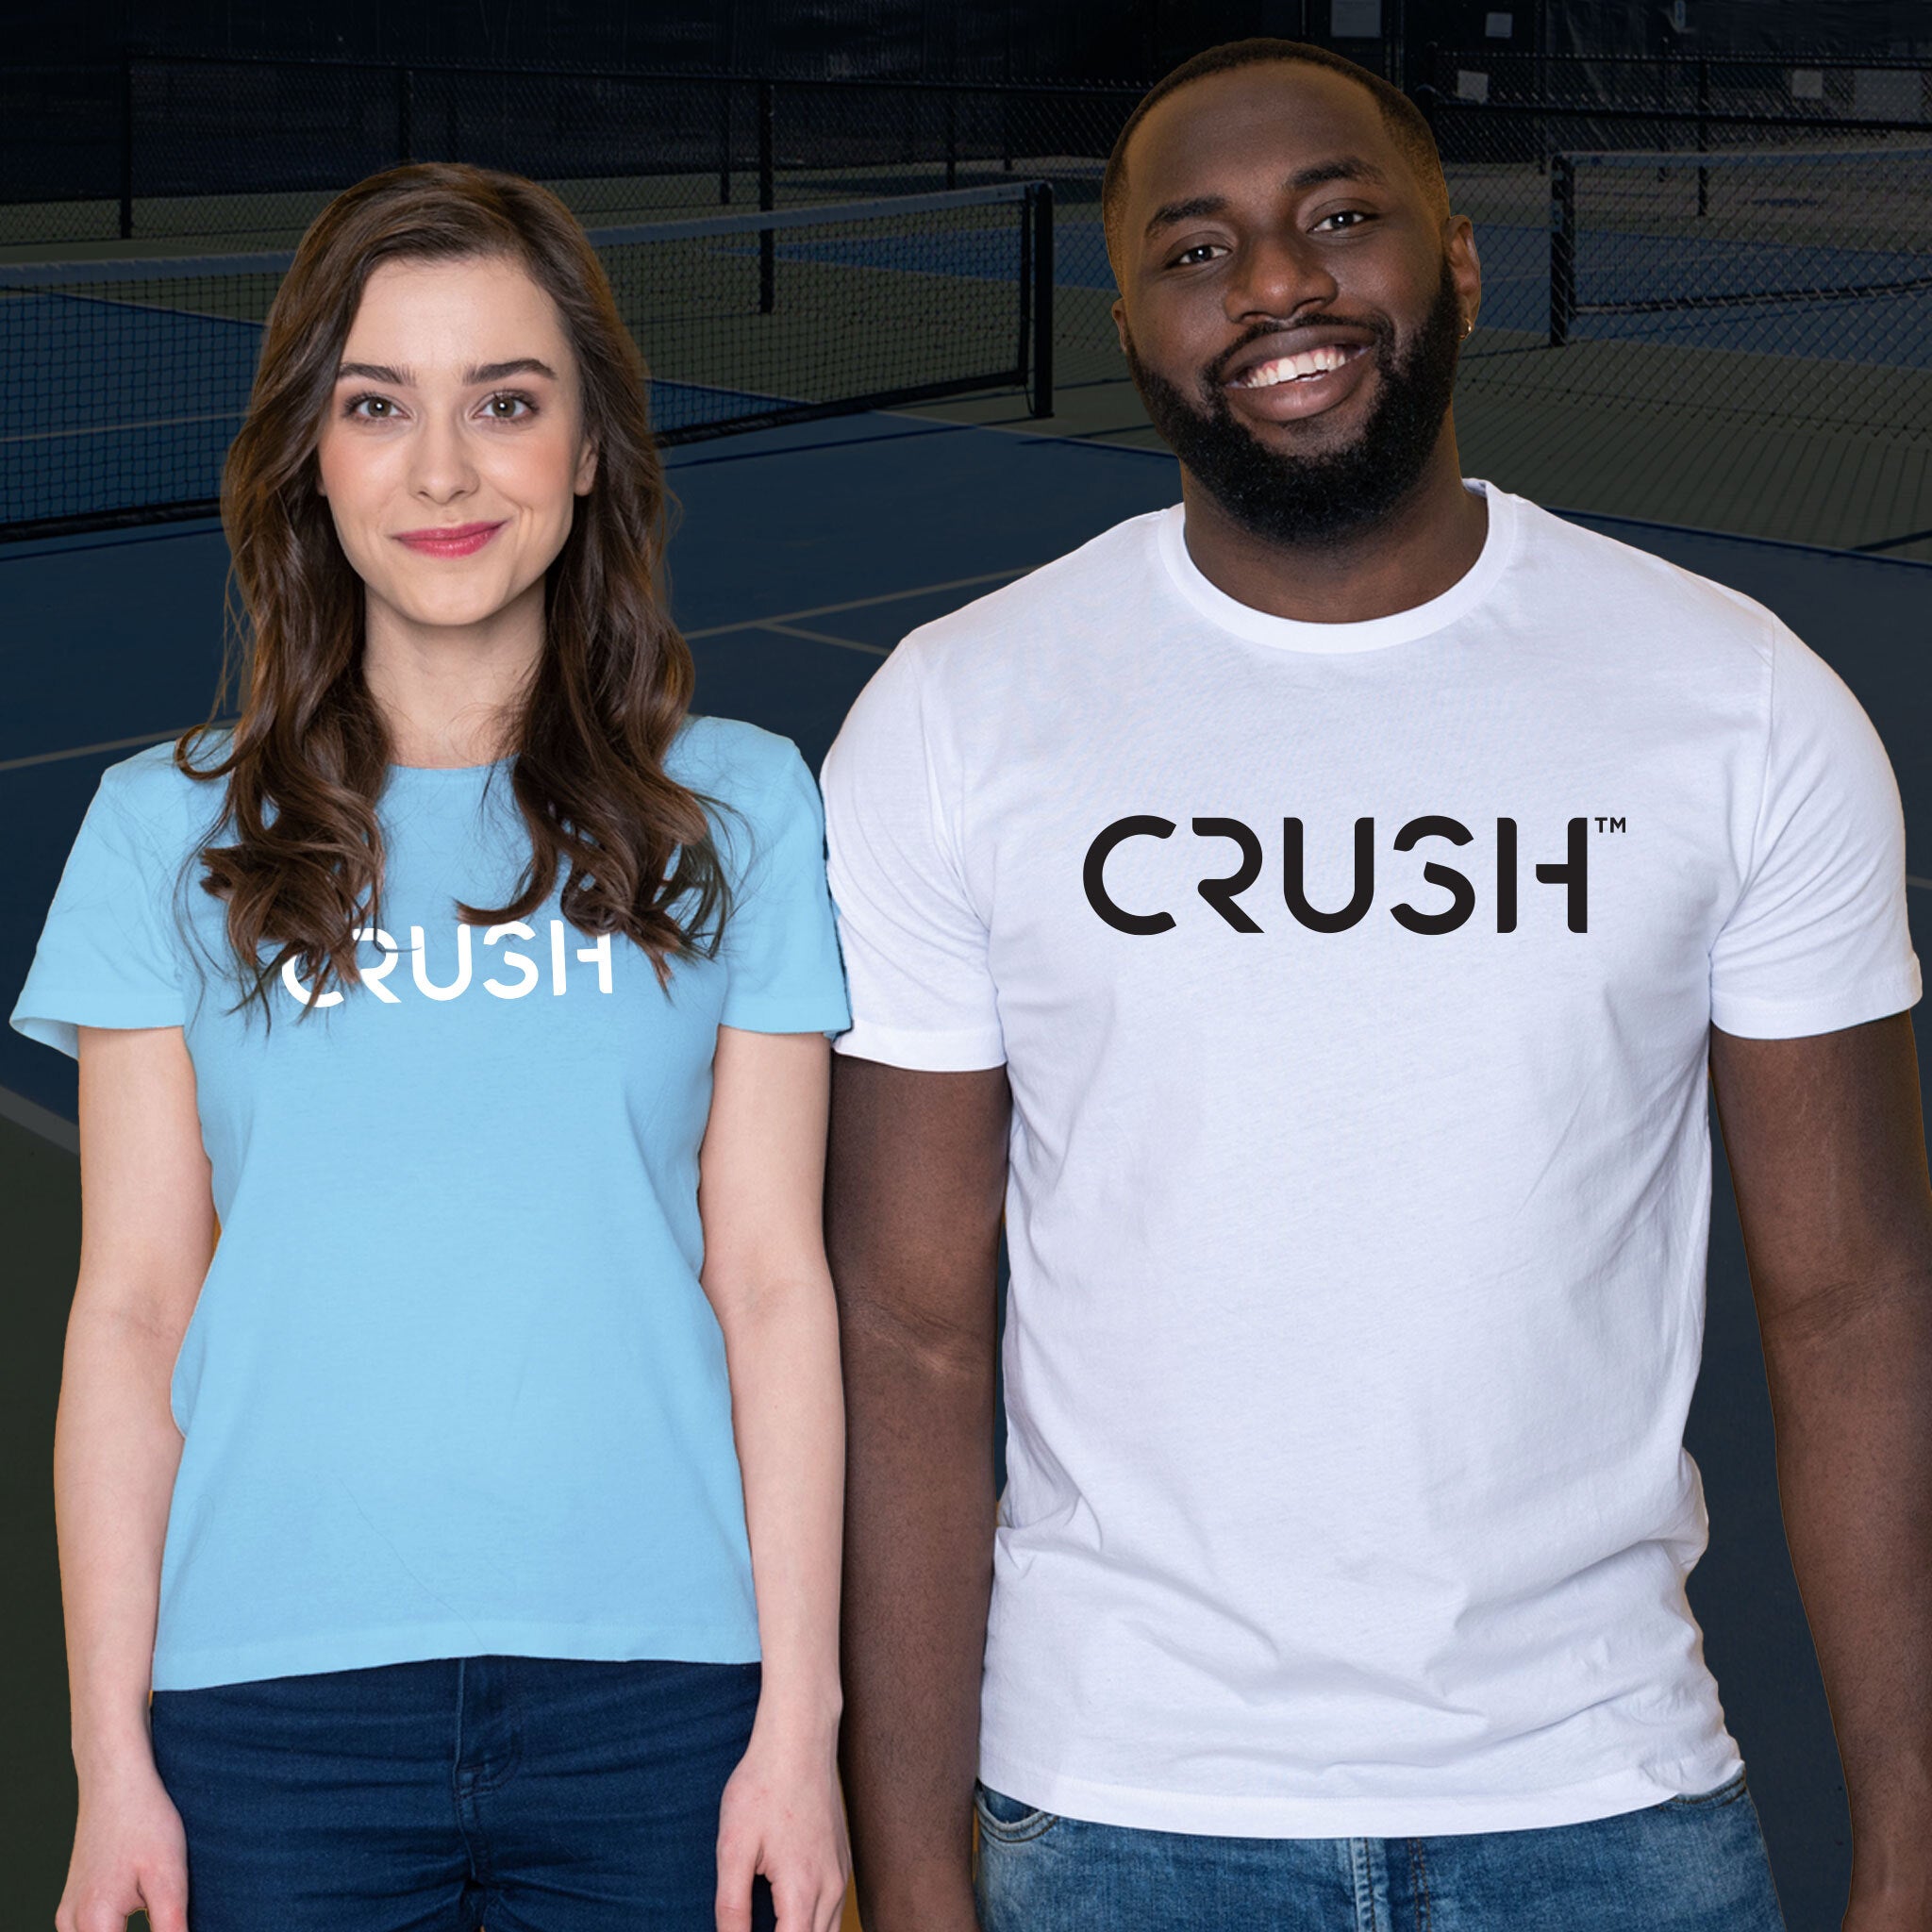 crush_apparel_unisex_performance_tshirt_blue_white.jpg